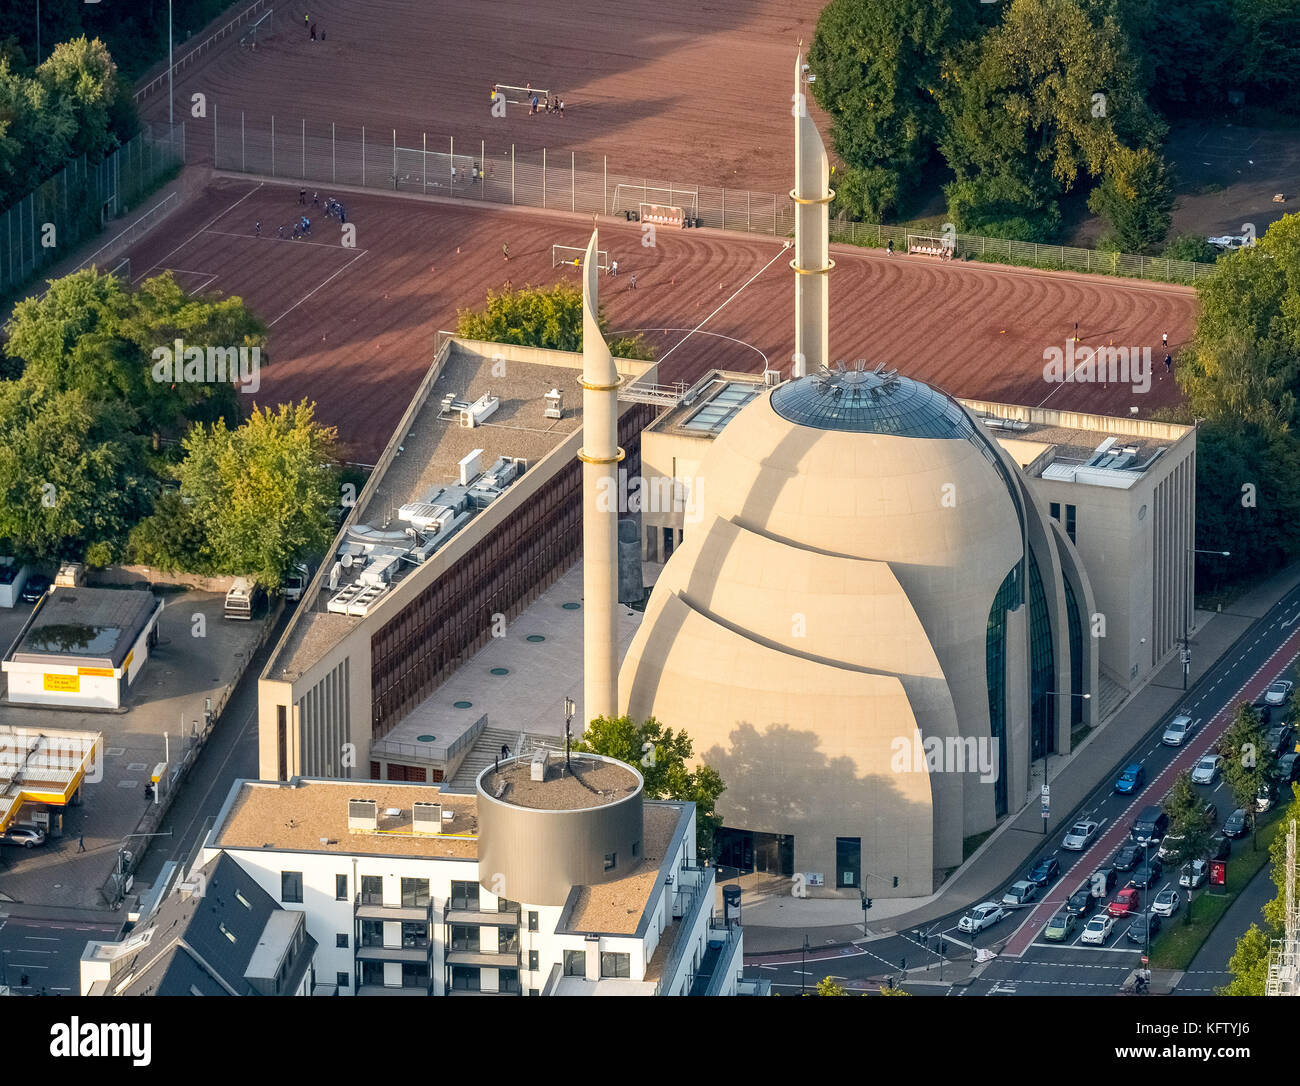 Mezquita Central de Colonia, Mezquita, en el interior de la Fuchsstrasse Kanalstraße, Casa de culto musulmana, Colonia, Renania del Norte-Westfalia, Alemania Foto de stock